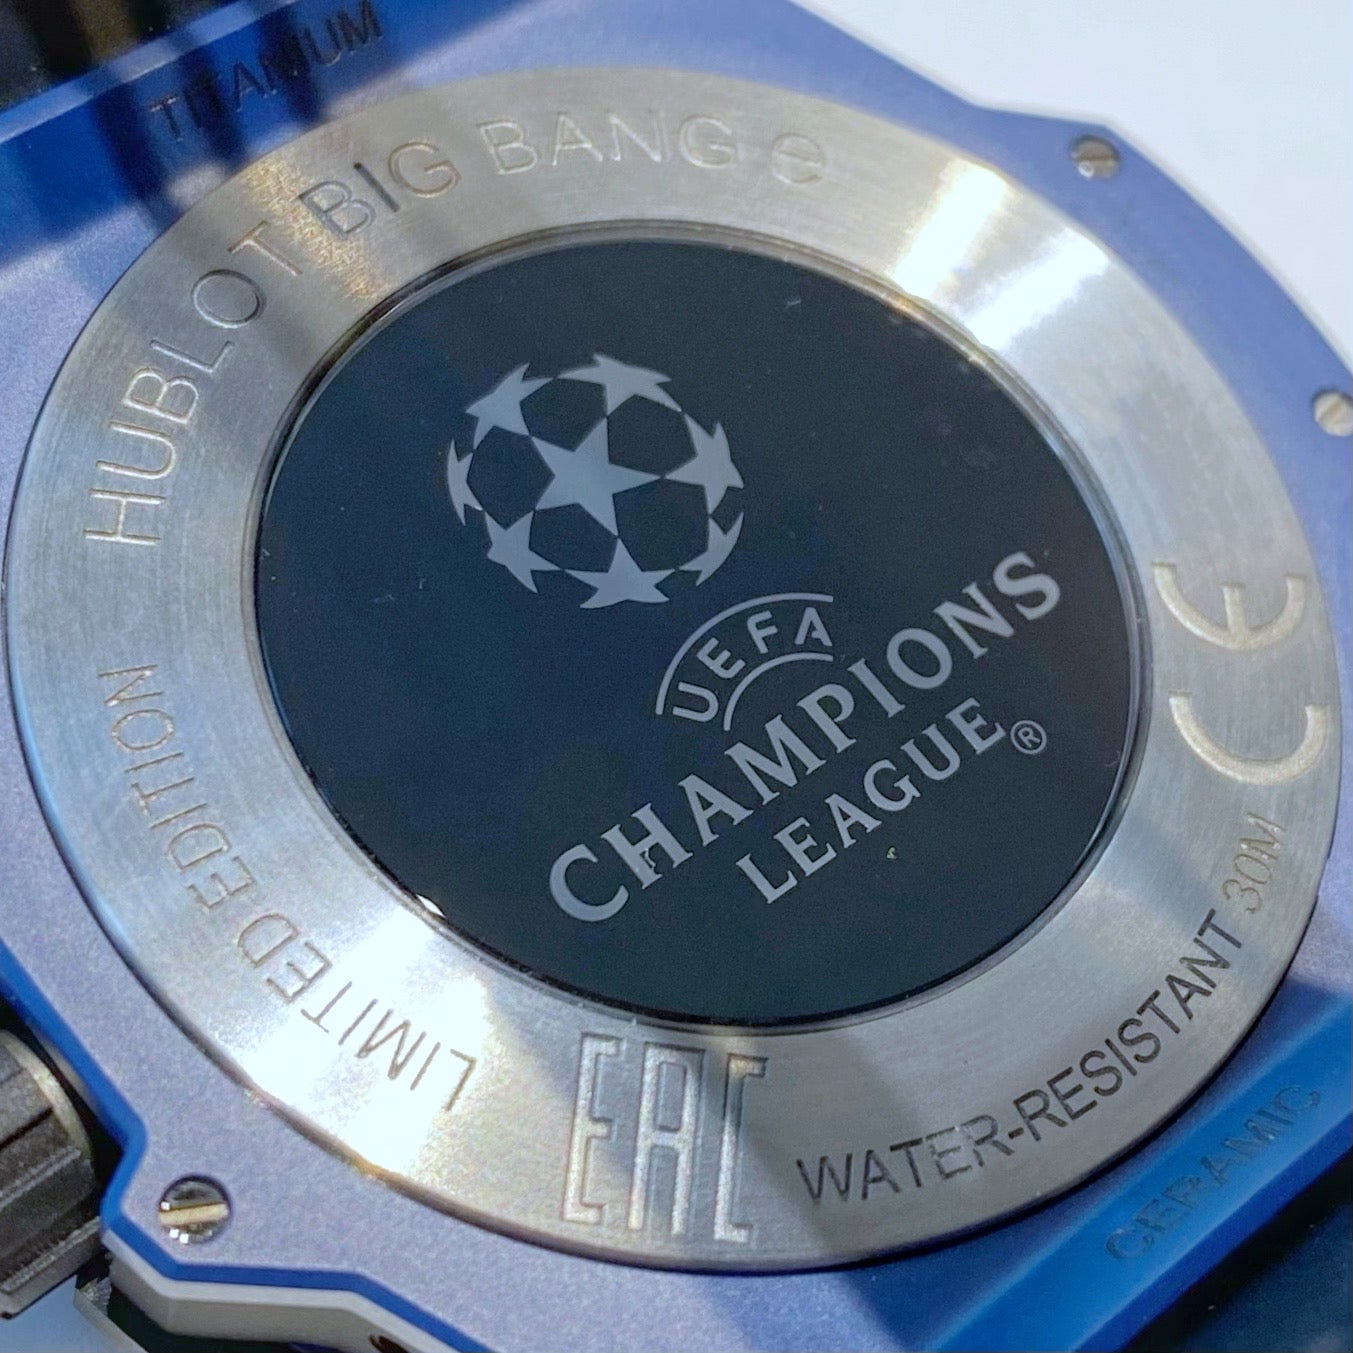 Big Bang e UEFA Champions League 440.EX.1100.RX.UCL20  Hublot - 株式会社アート